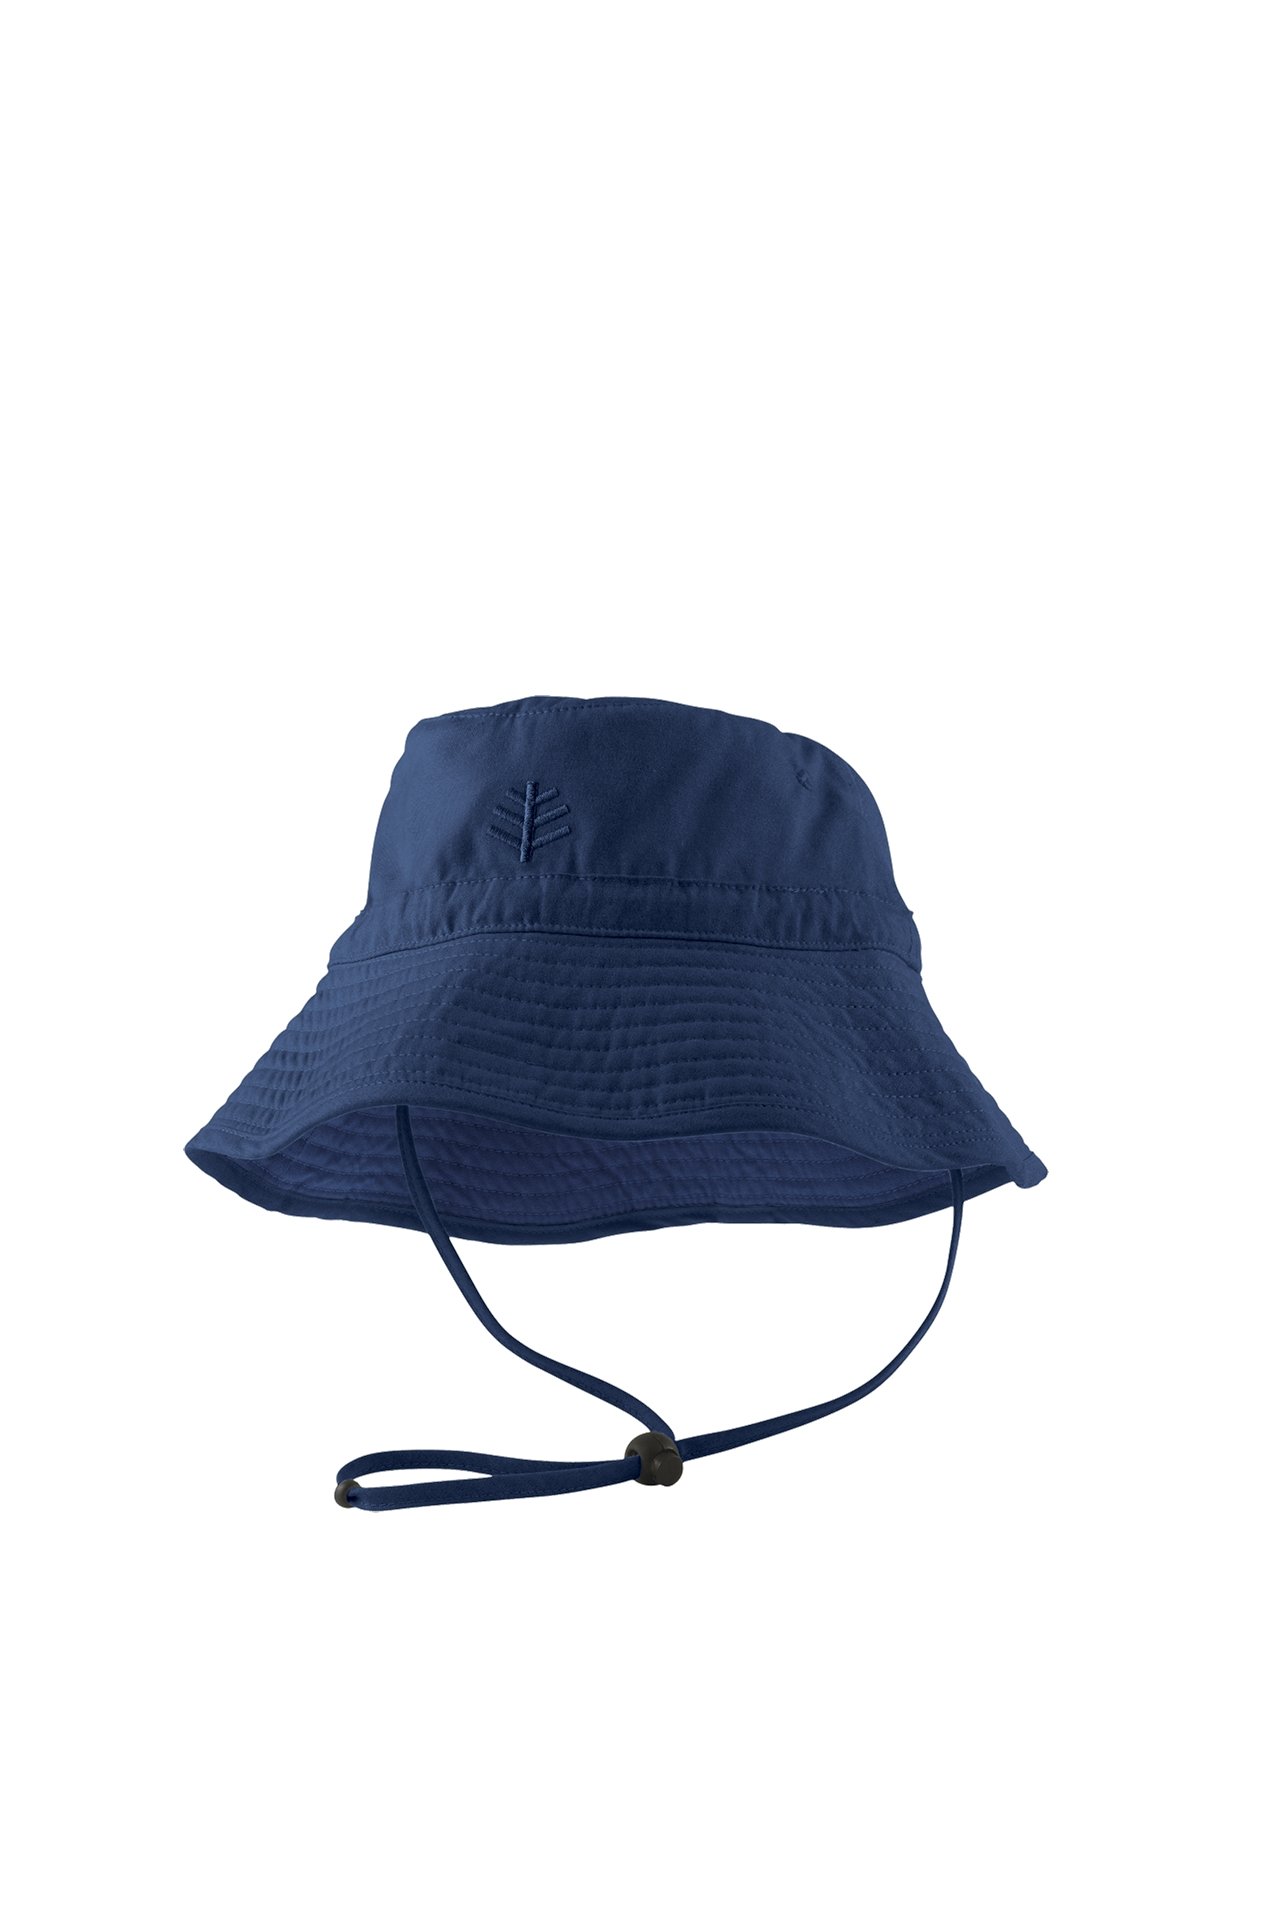 Coolibar - UPF 50+ Toddler Chin Strap Sun Hat- Blue